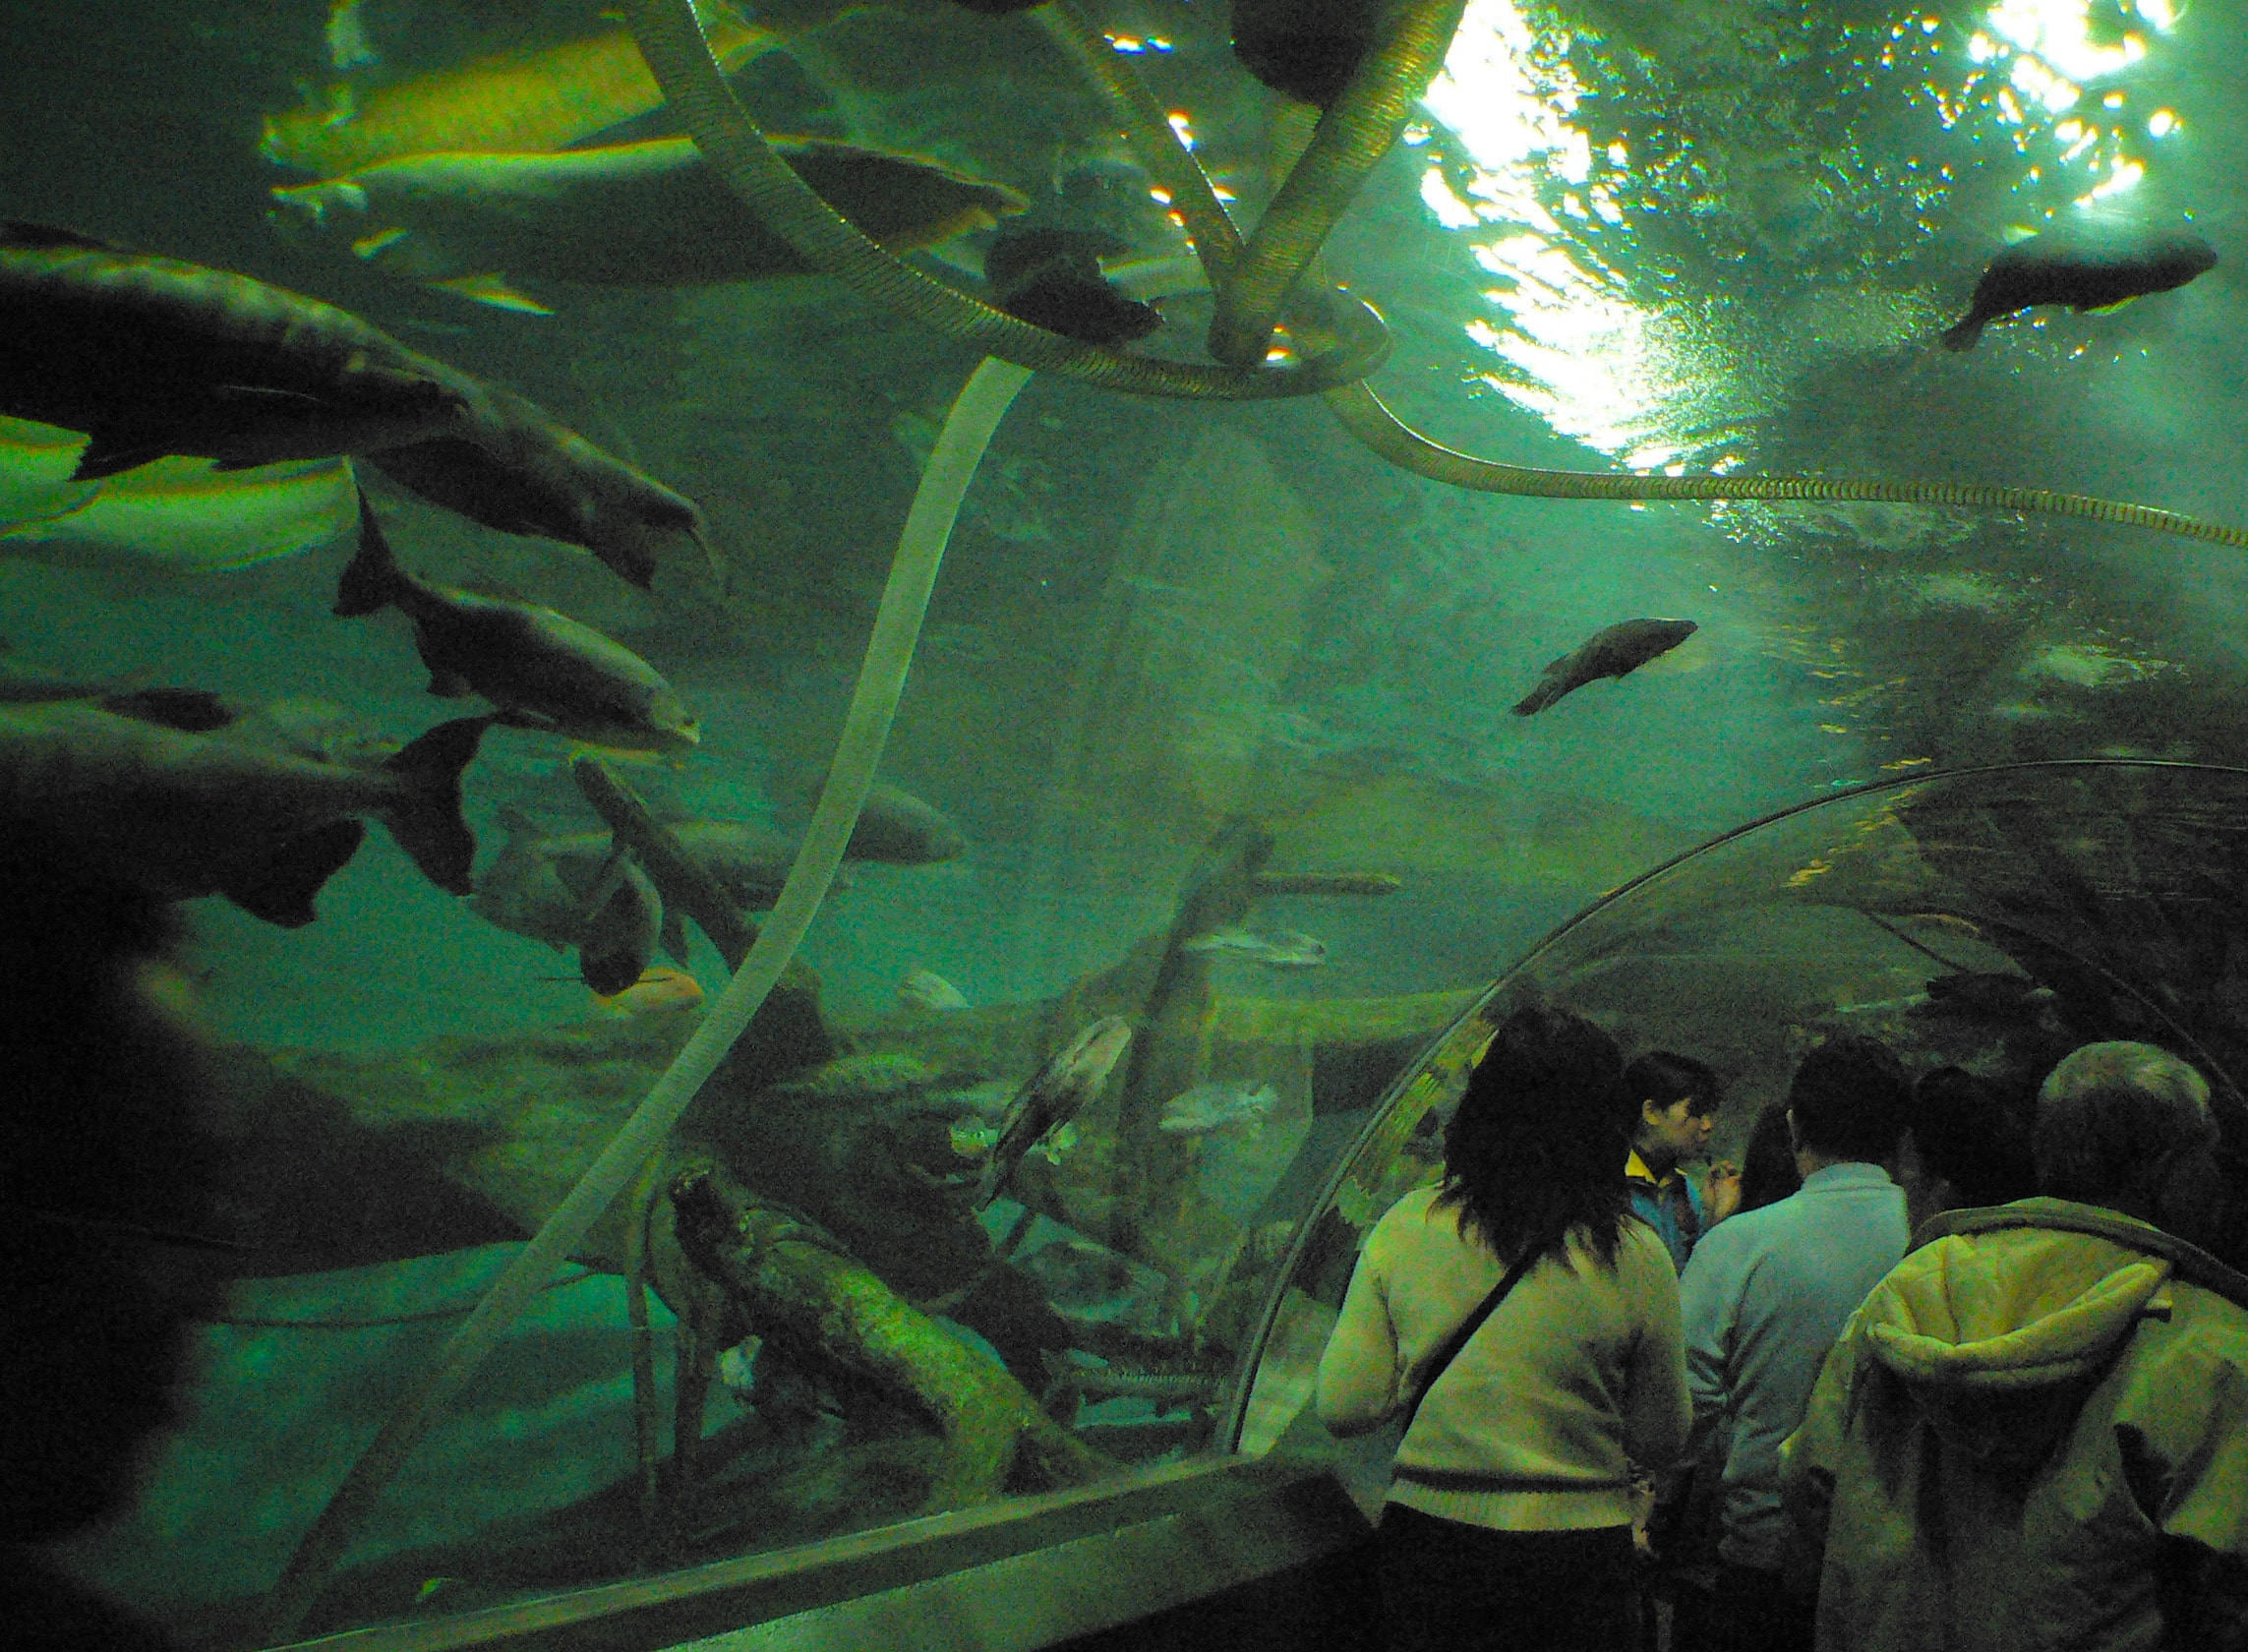 Top 15 Largest Aquariums In The World- 2019 - Shanghai Ocean Aquarium